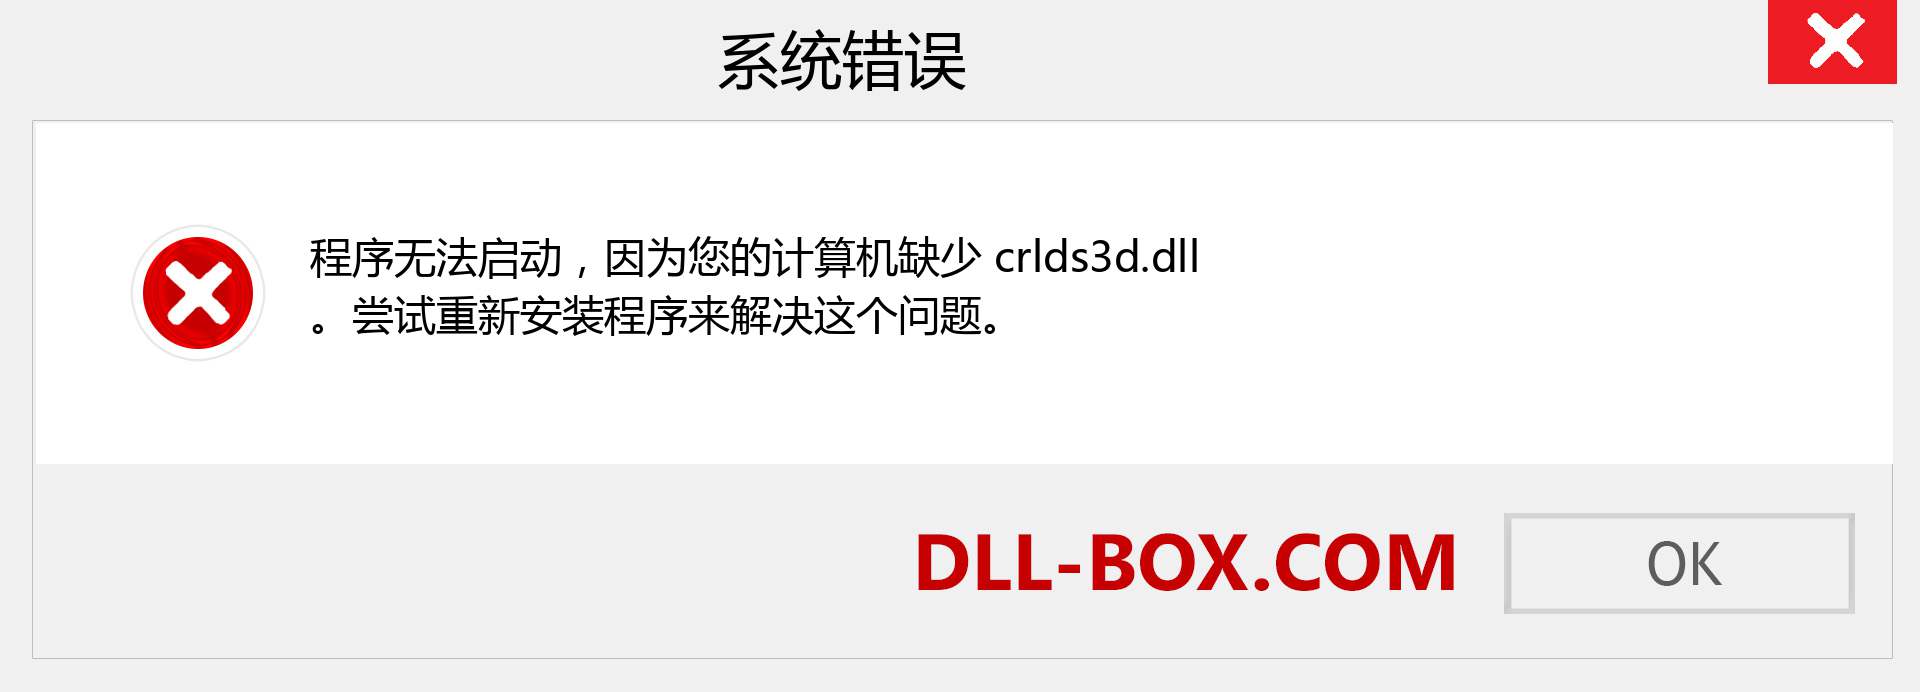 crlds3d.dll 文件丢失？。 适用于 Windows 7、8、10 的下载 - 修复 Windows、照片、图像上的 crlds3d dll 丢失错误